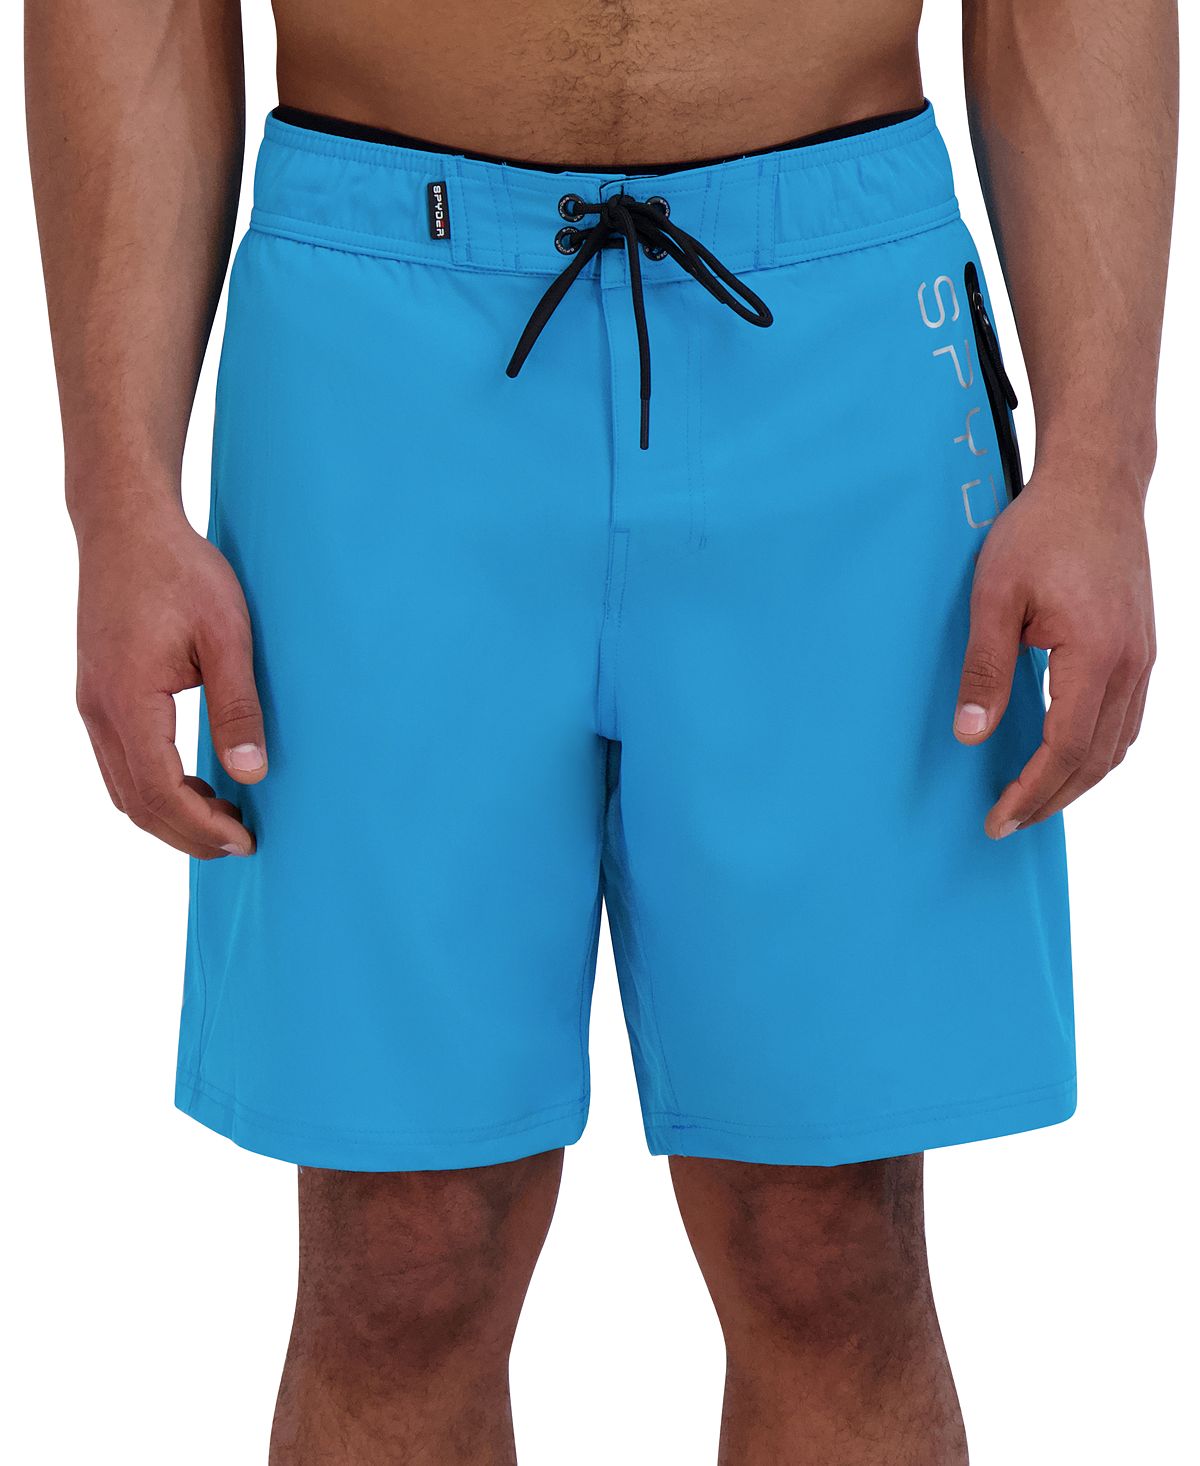 Мужские шорты для плавания Eboard 9 дюймов Spyder